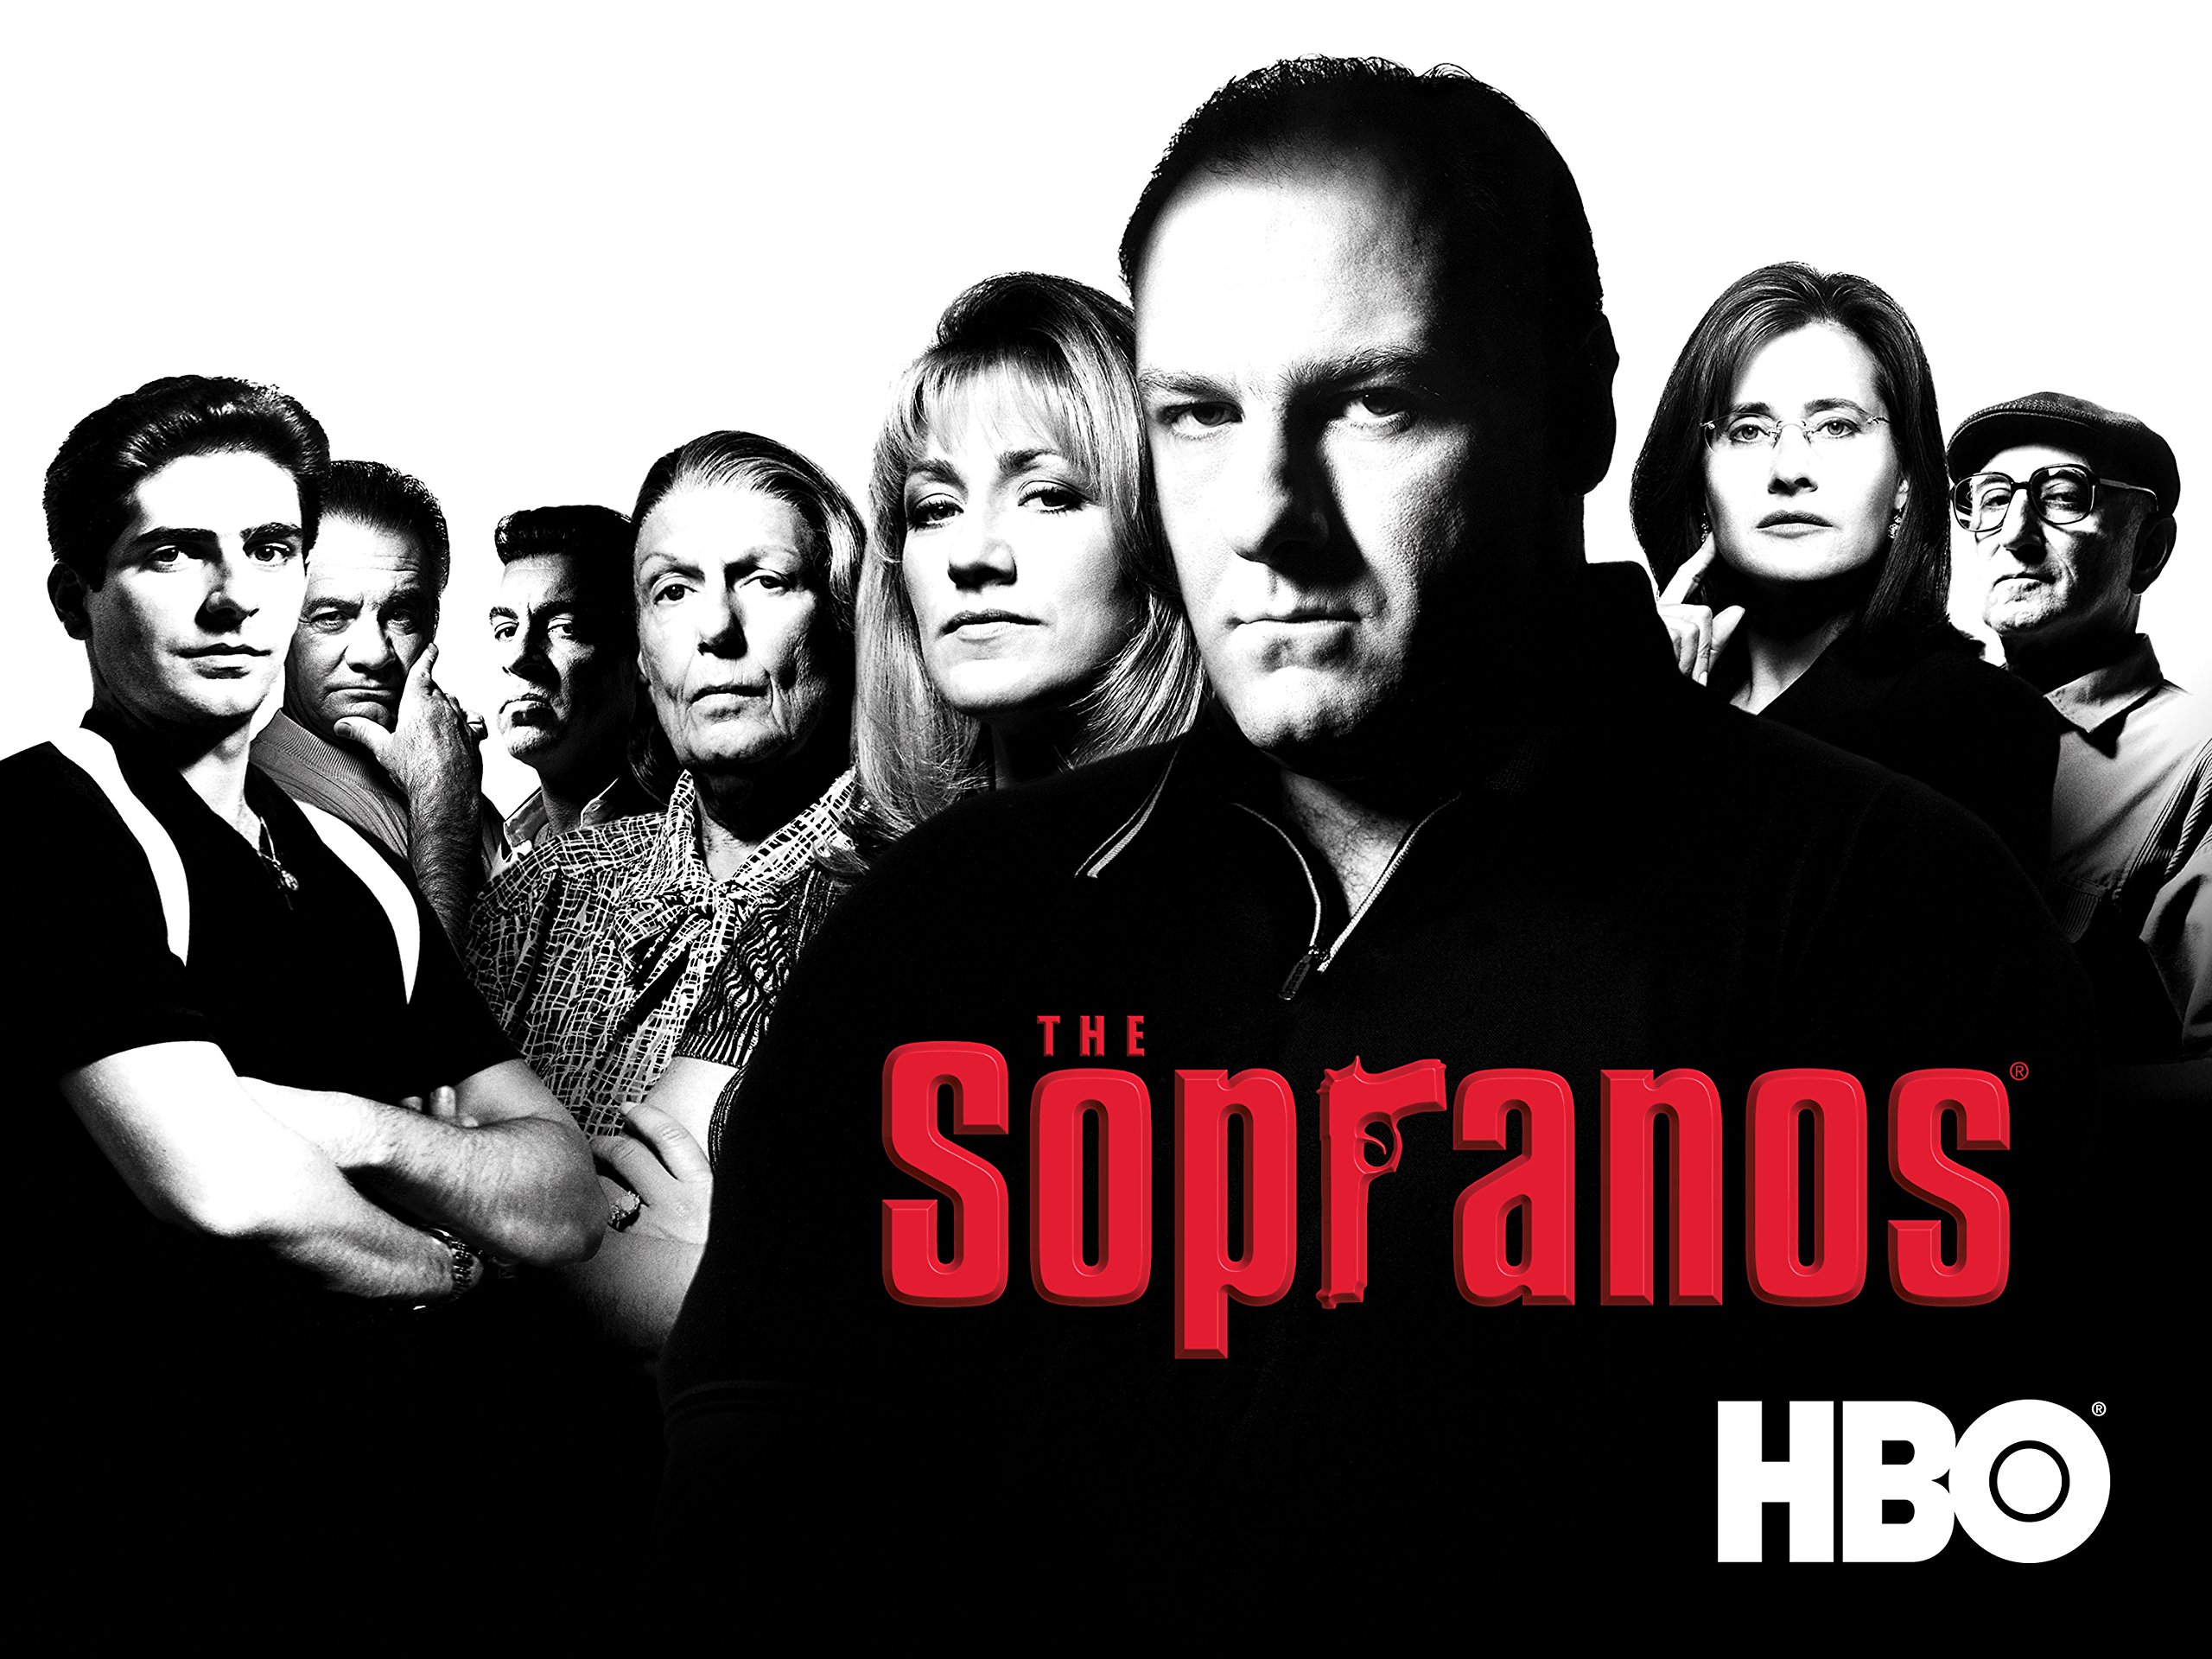 The Sopranos season two